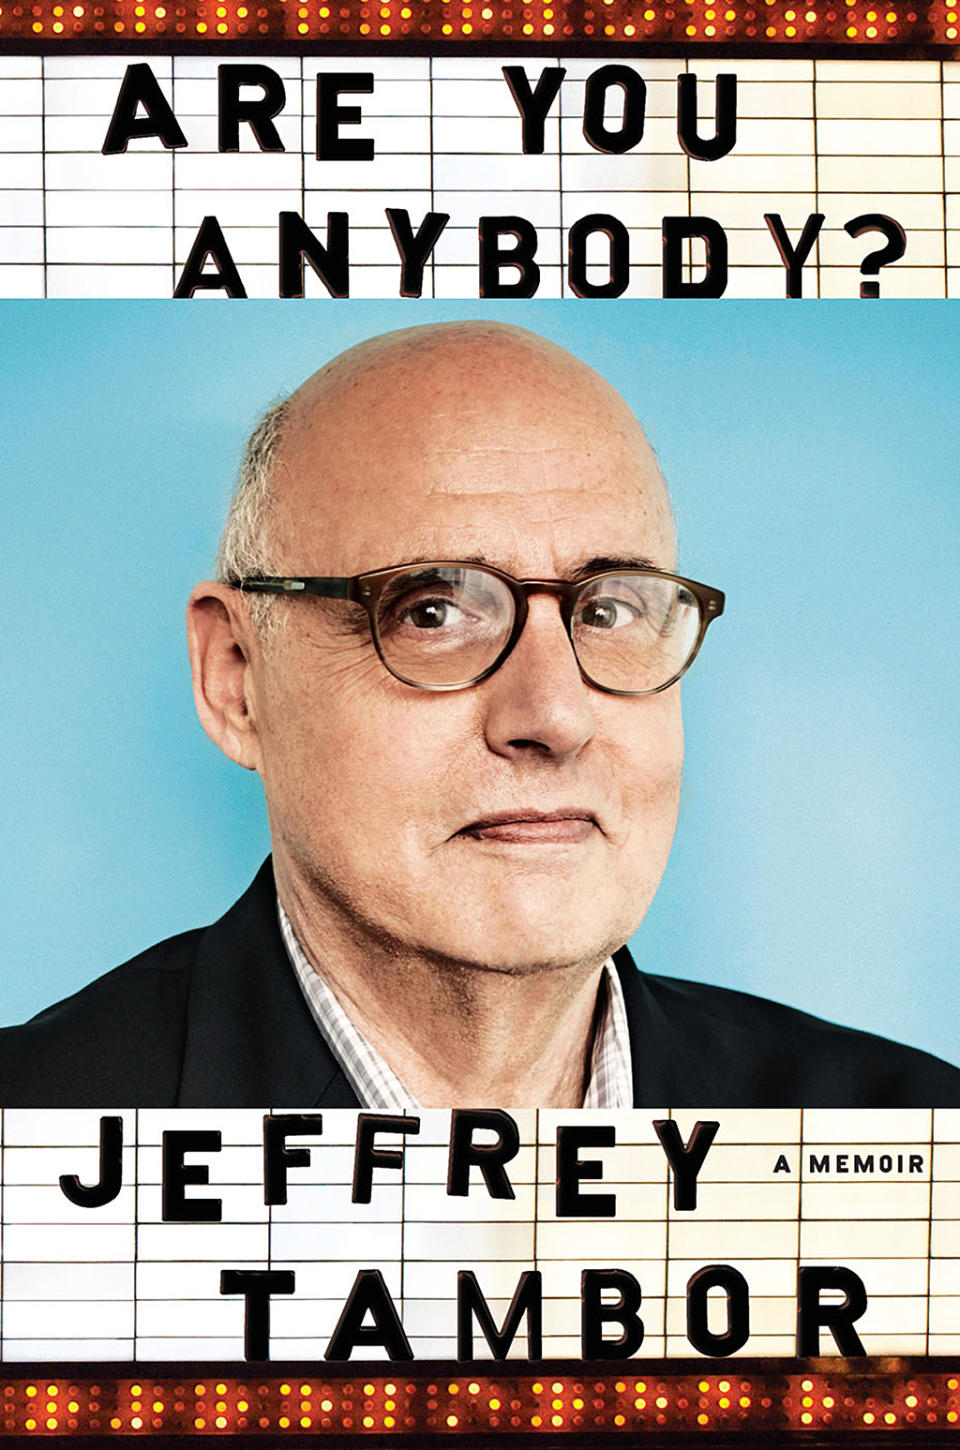 ‘Are you Anybody?: A Memoir’ by Jeffrey Tambor